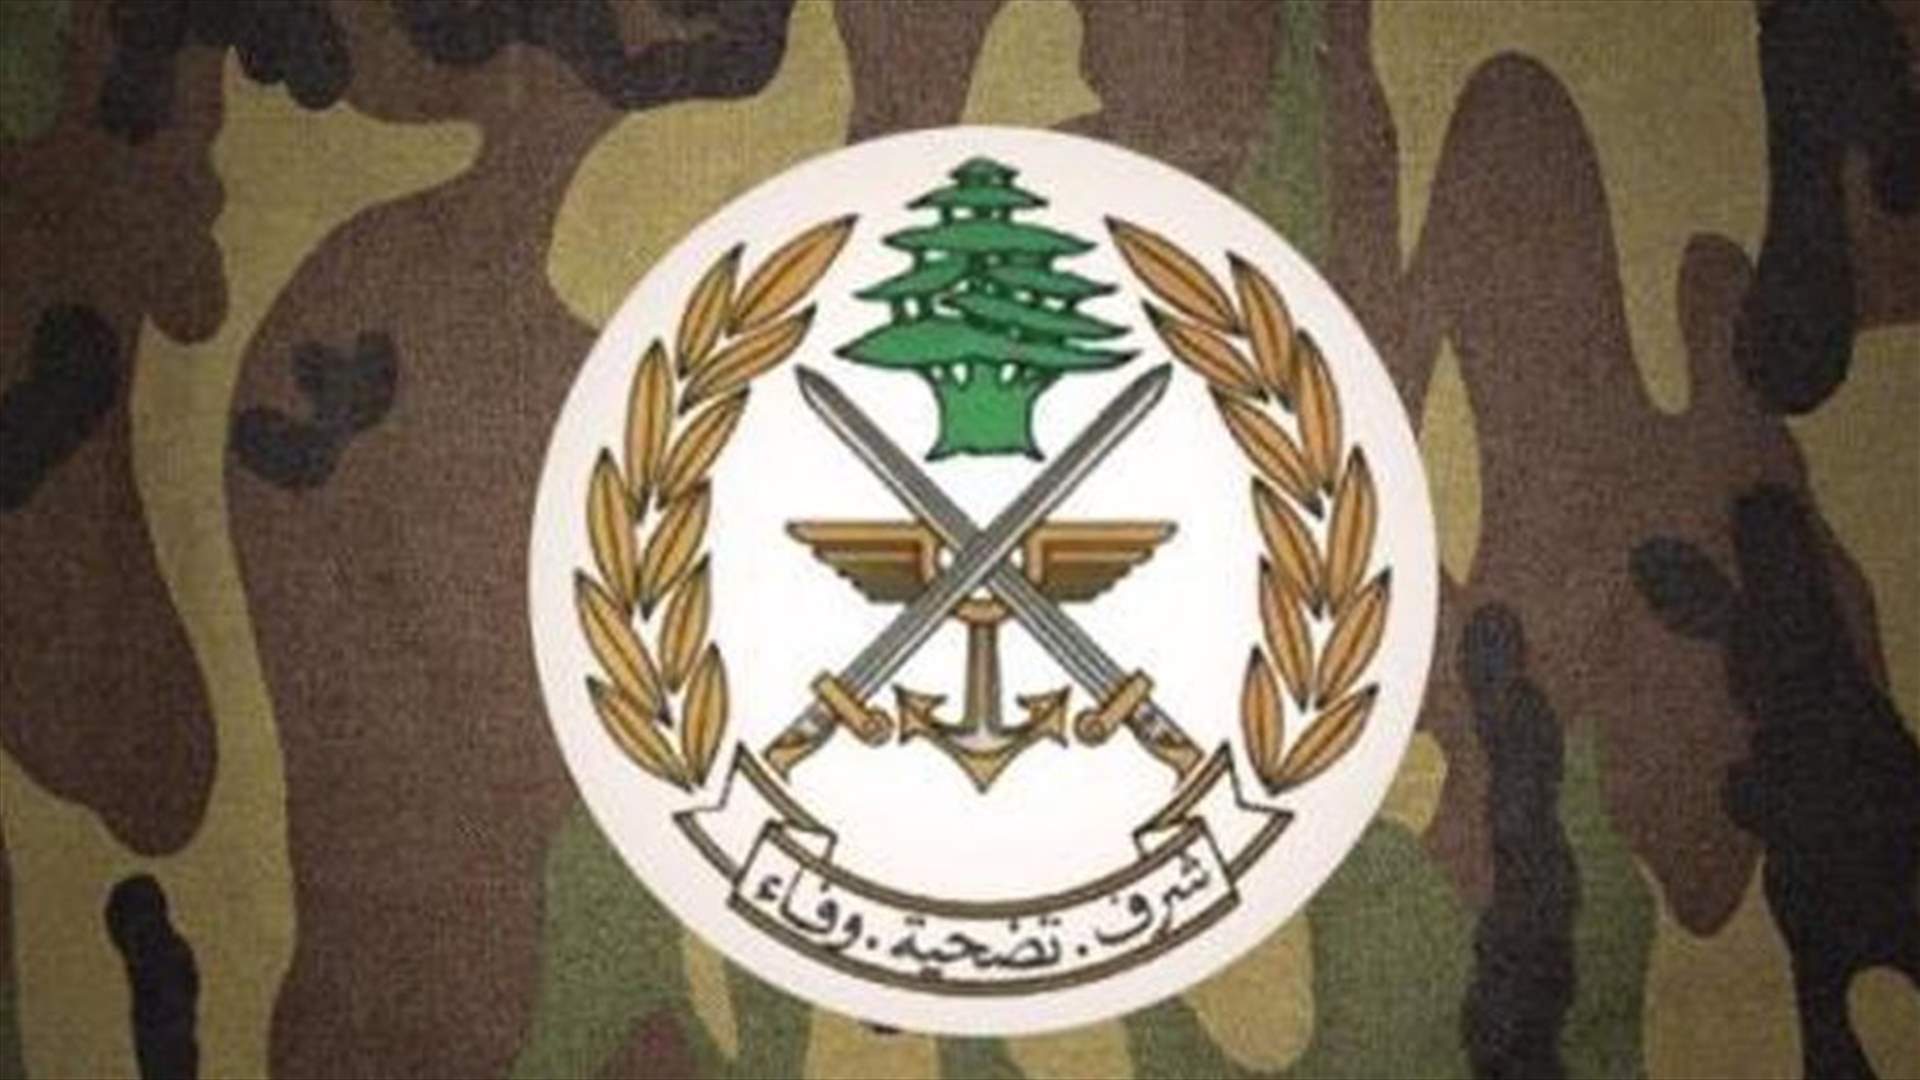 الجيش: توقيف مروج مخدرات في محلة برج البراجنة الرمل العالي